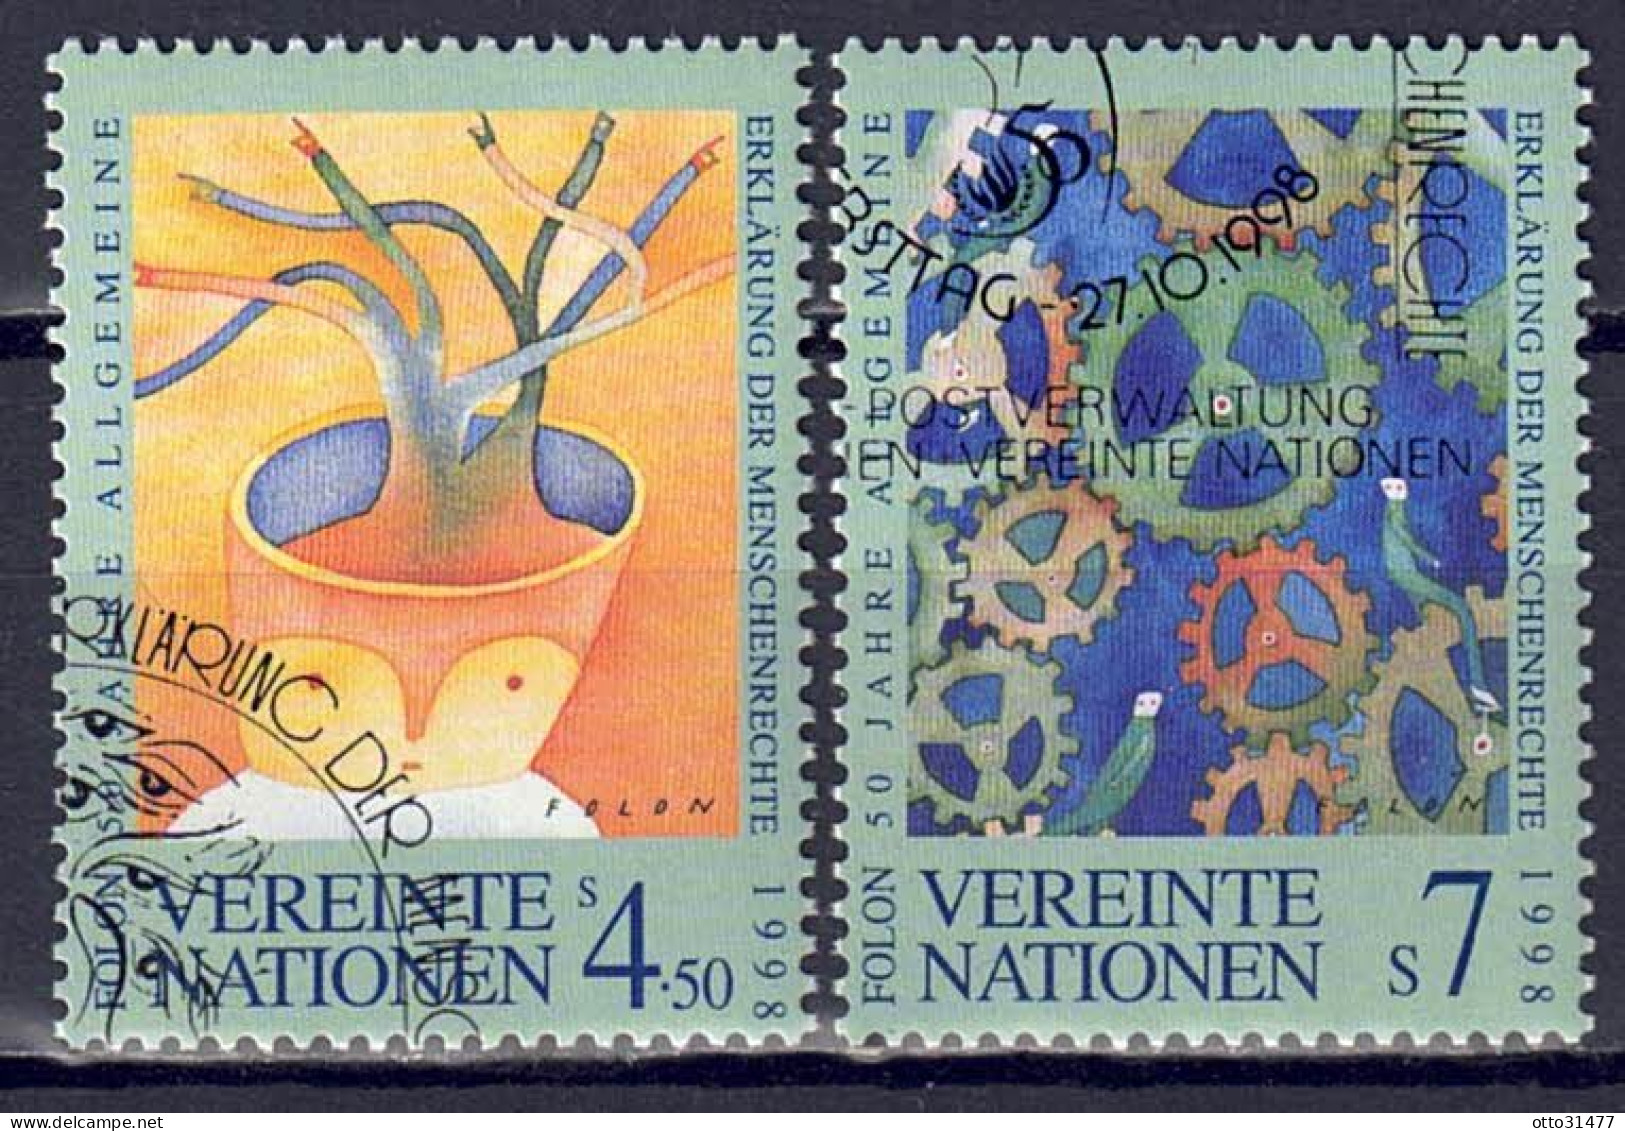 UNO Wien 1998 - Menschenrechte, Nr. 268 - 269, Gestempelt / Used - Used Stamps